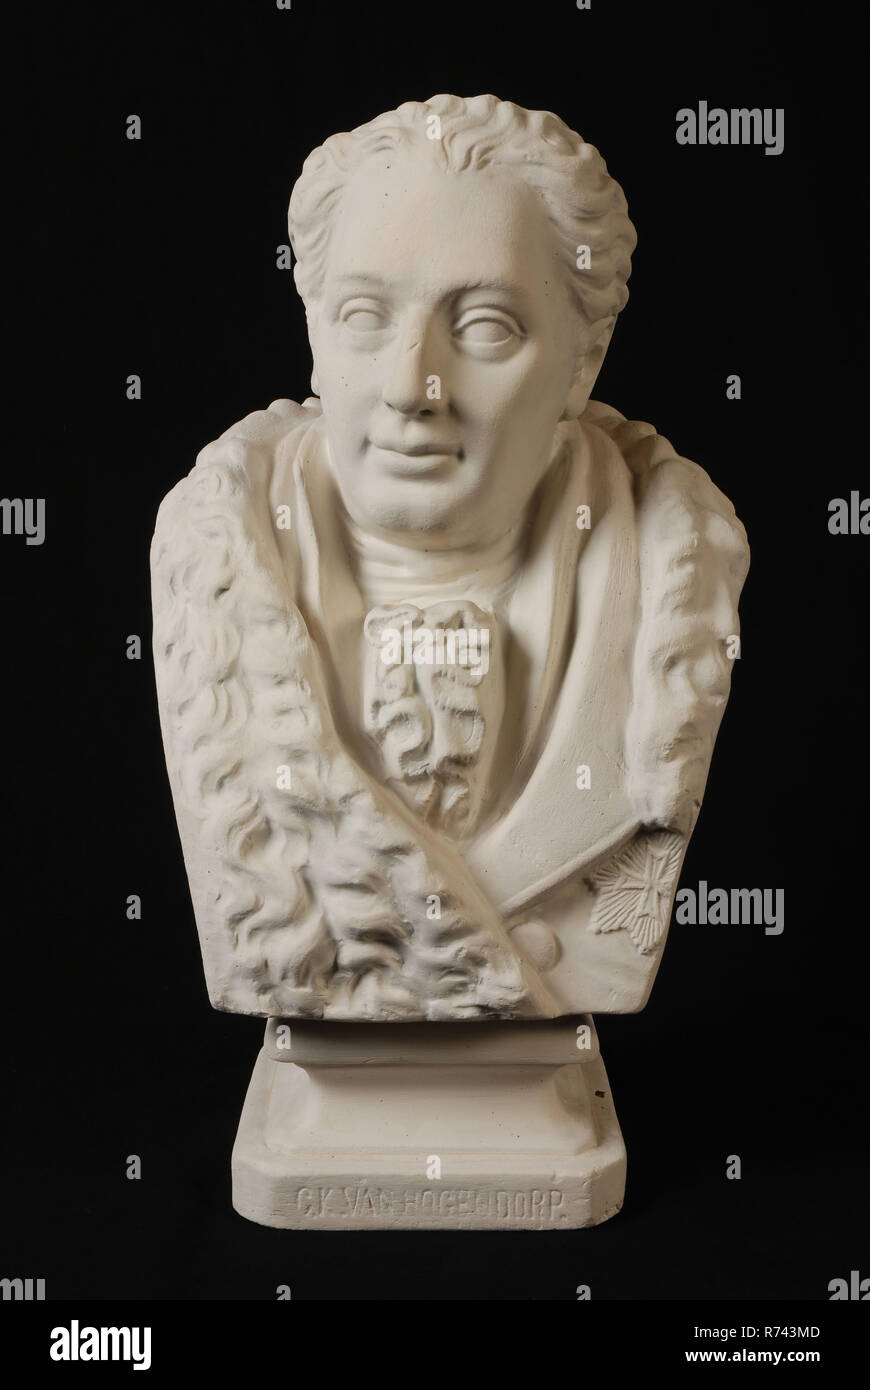 A. Dubois, Bust on 13 size of Mr. Gijsbert Karel van Hogendorp (1762 ...